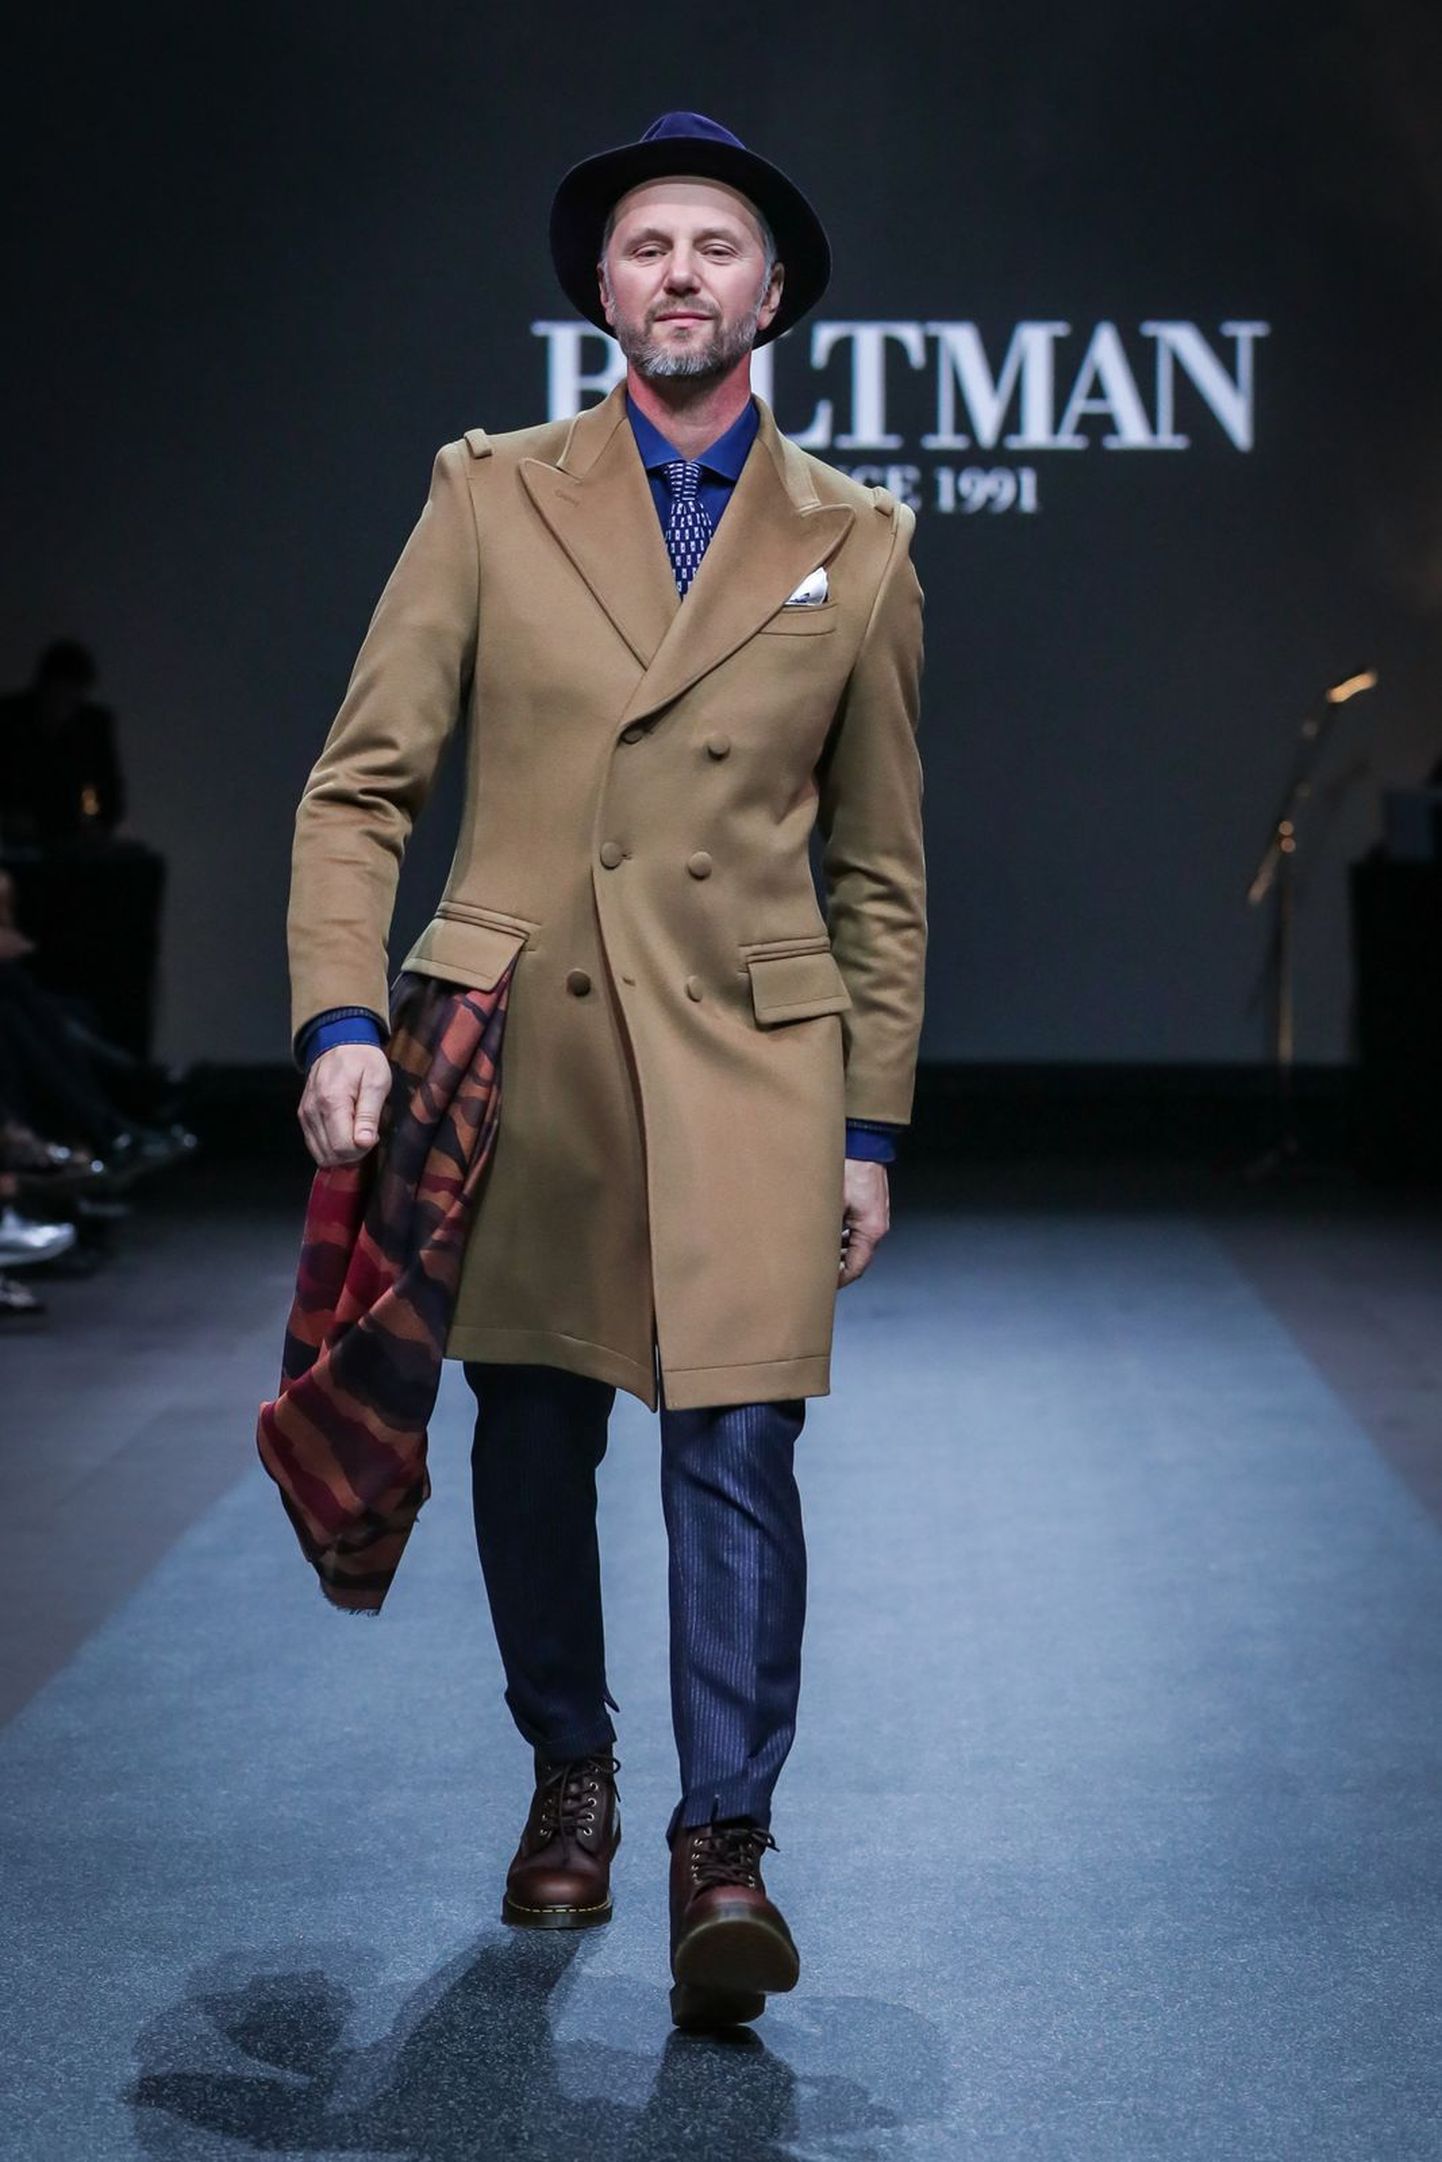 Staaride piltnikust Toomas Volkmann proovis modellitööd Tallinn Fashion Weeki raames Baltmani moeshowl